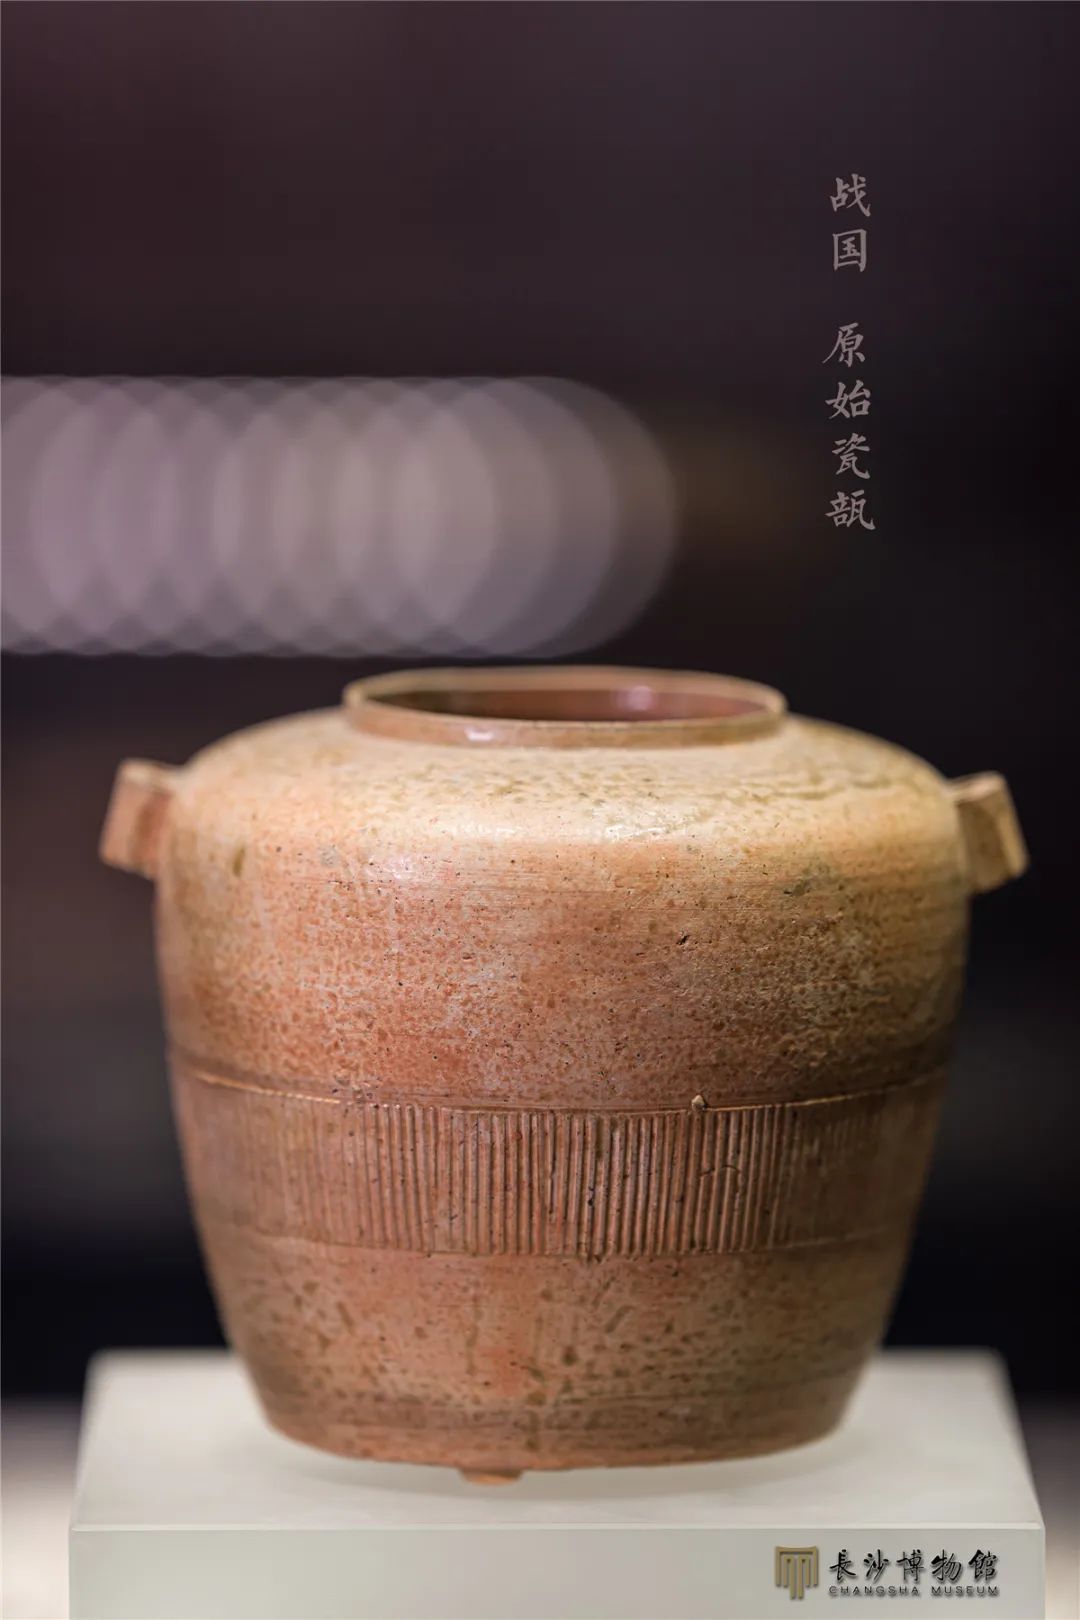 原始瓷瓿 东周（前770-前221年） 湘乡市联盟砖厂一号墓出土 湘潭市博物馆藏